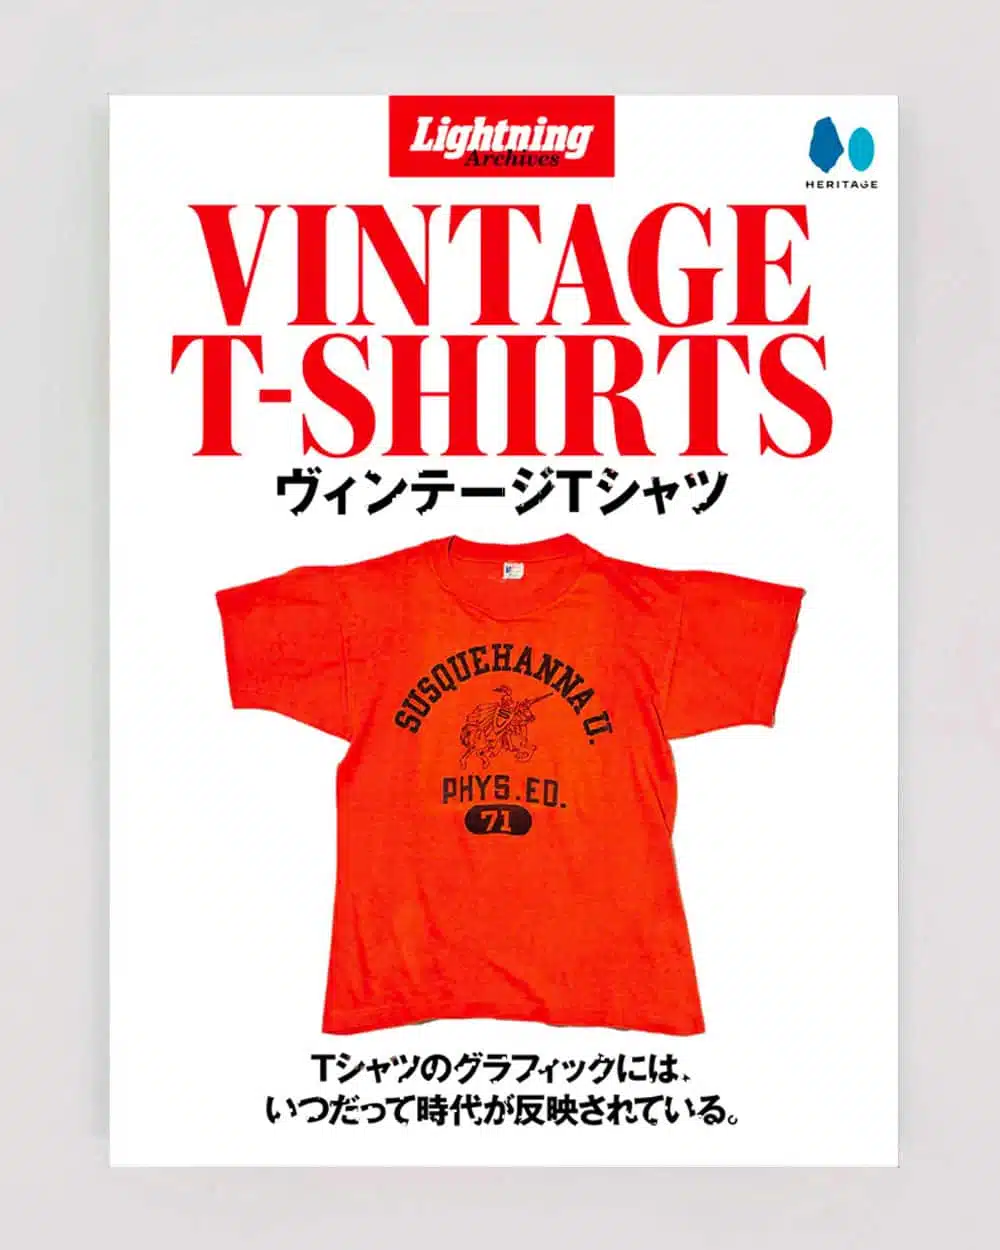 Lightning Archives Vintage T-Shirts